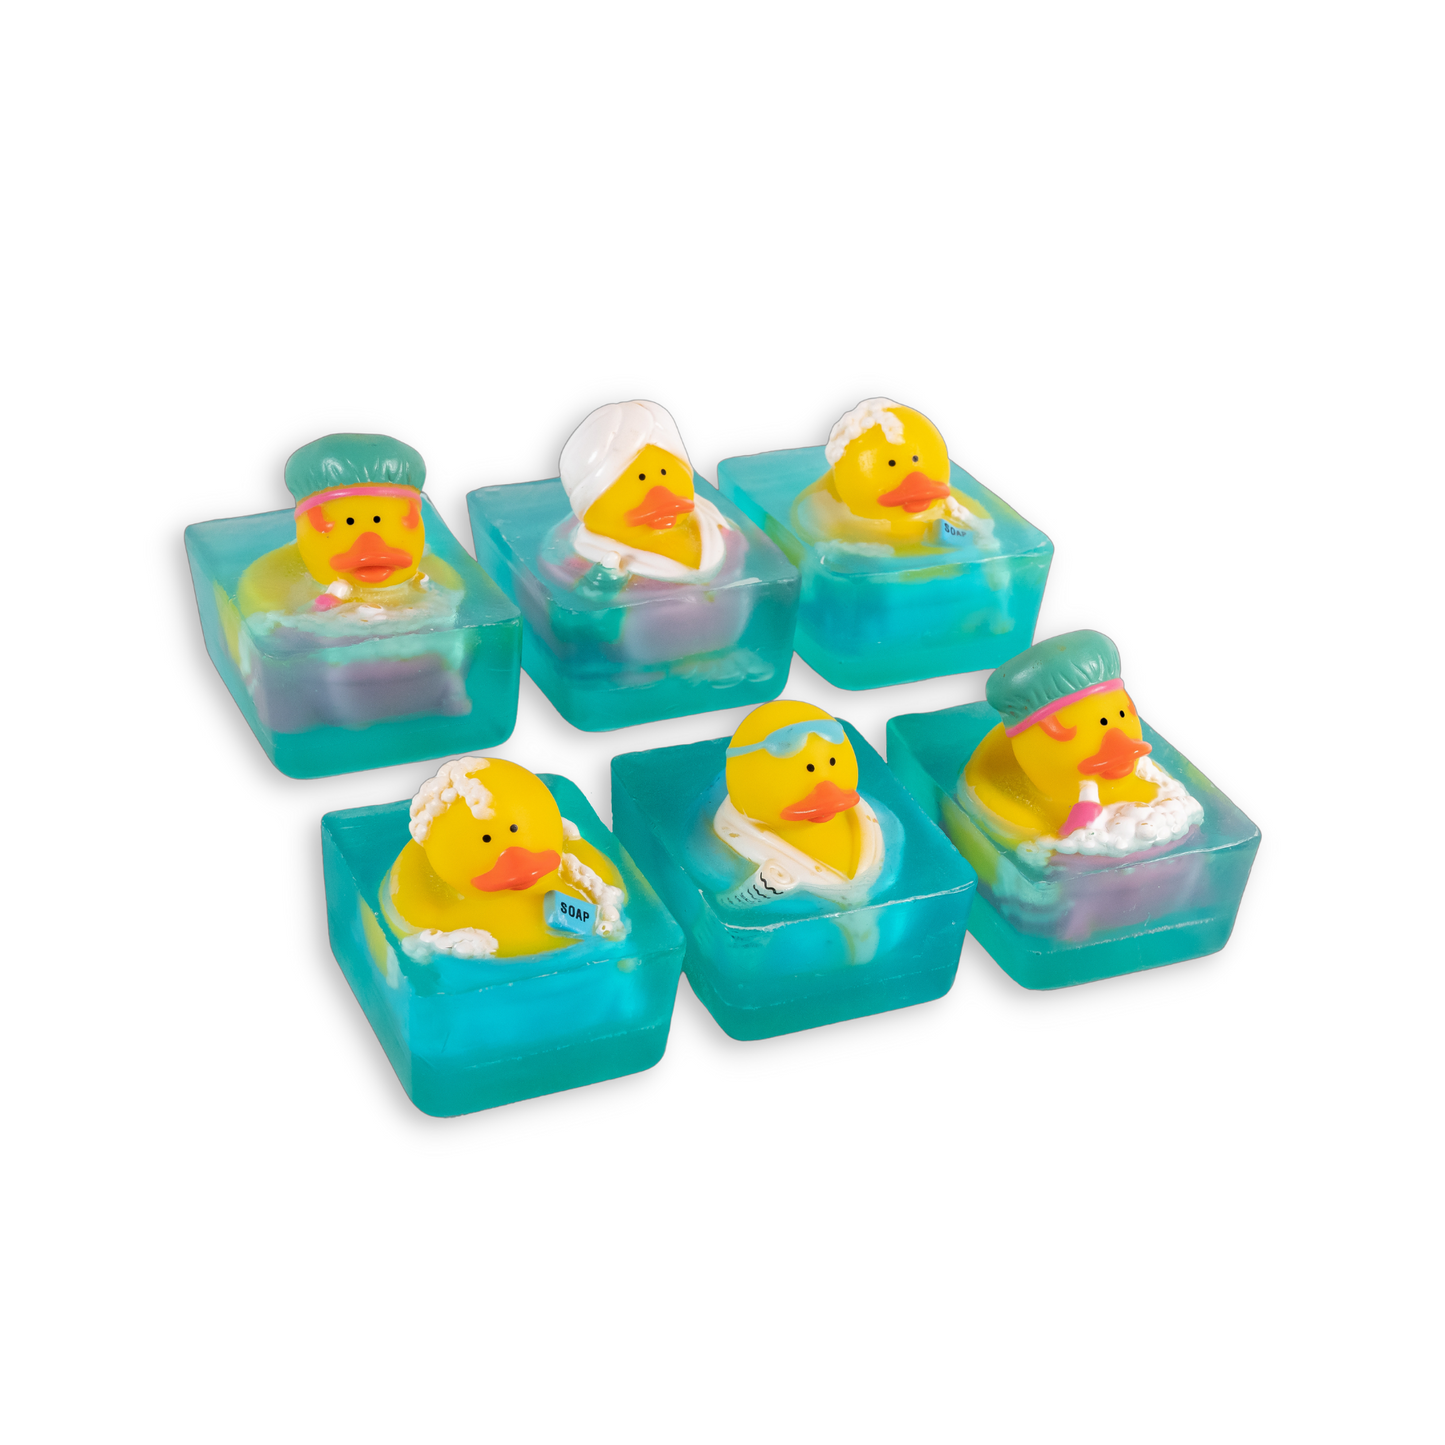 Bathtub Duck Toy Soaps